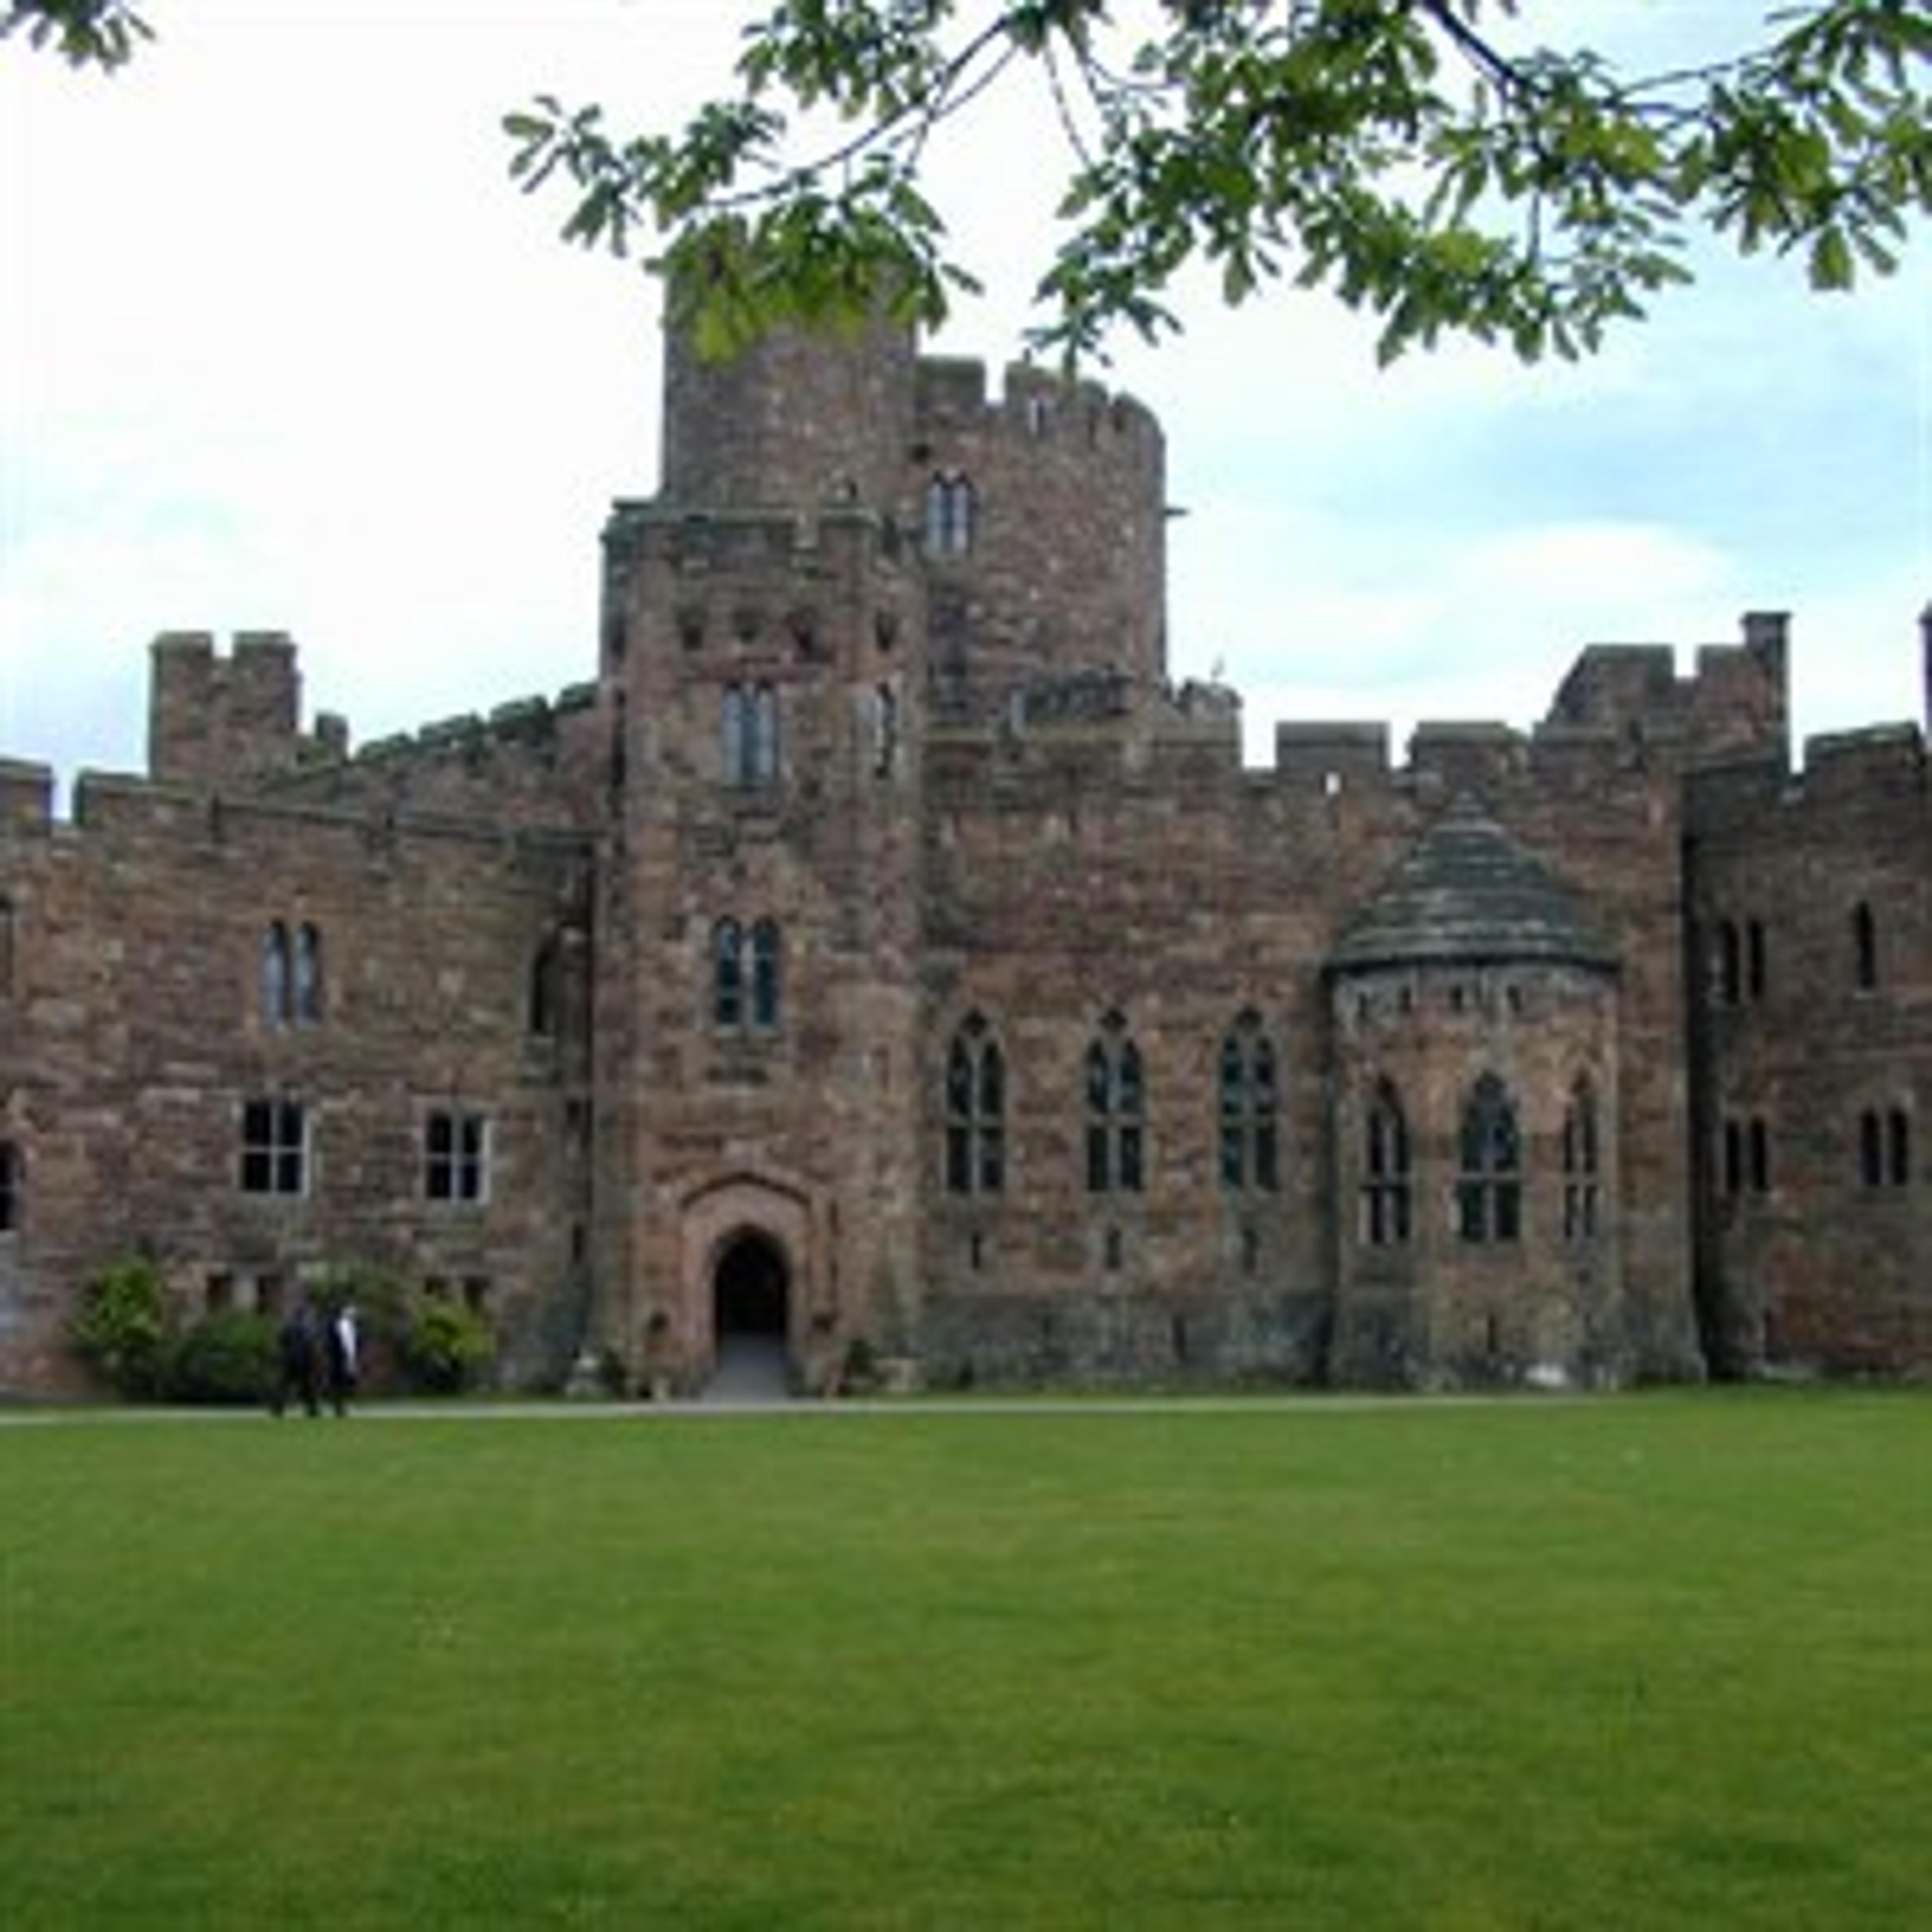 Peckforton Castle